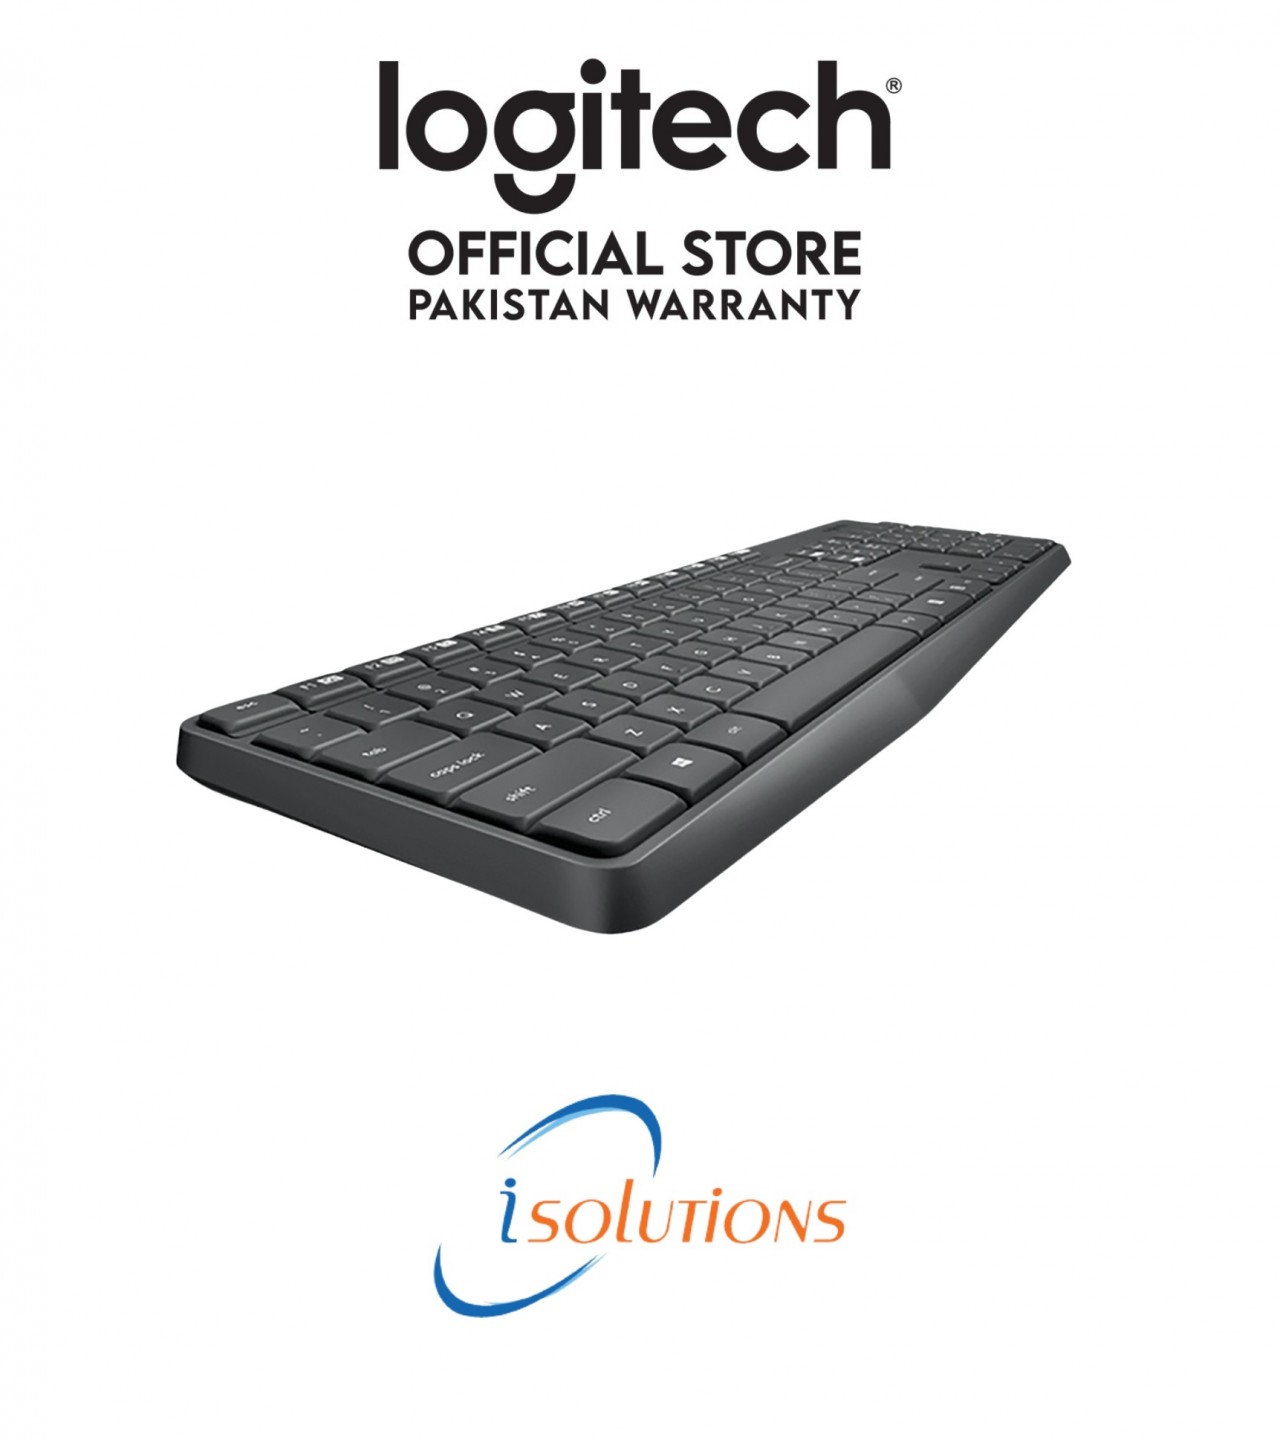 MK235 Wireless Keyboard and Mouse Combo - Logitech